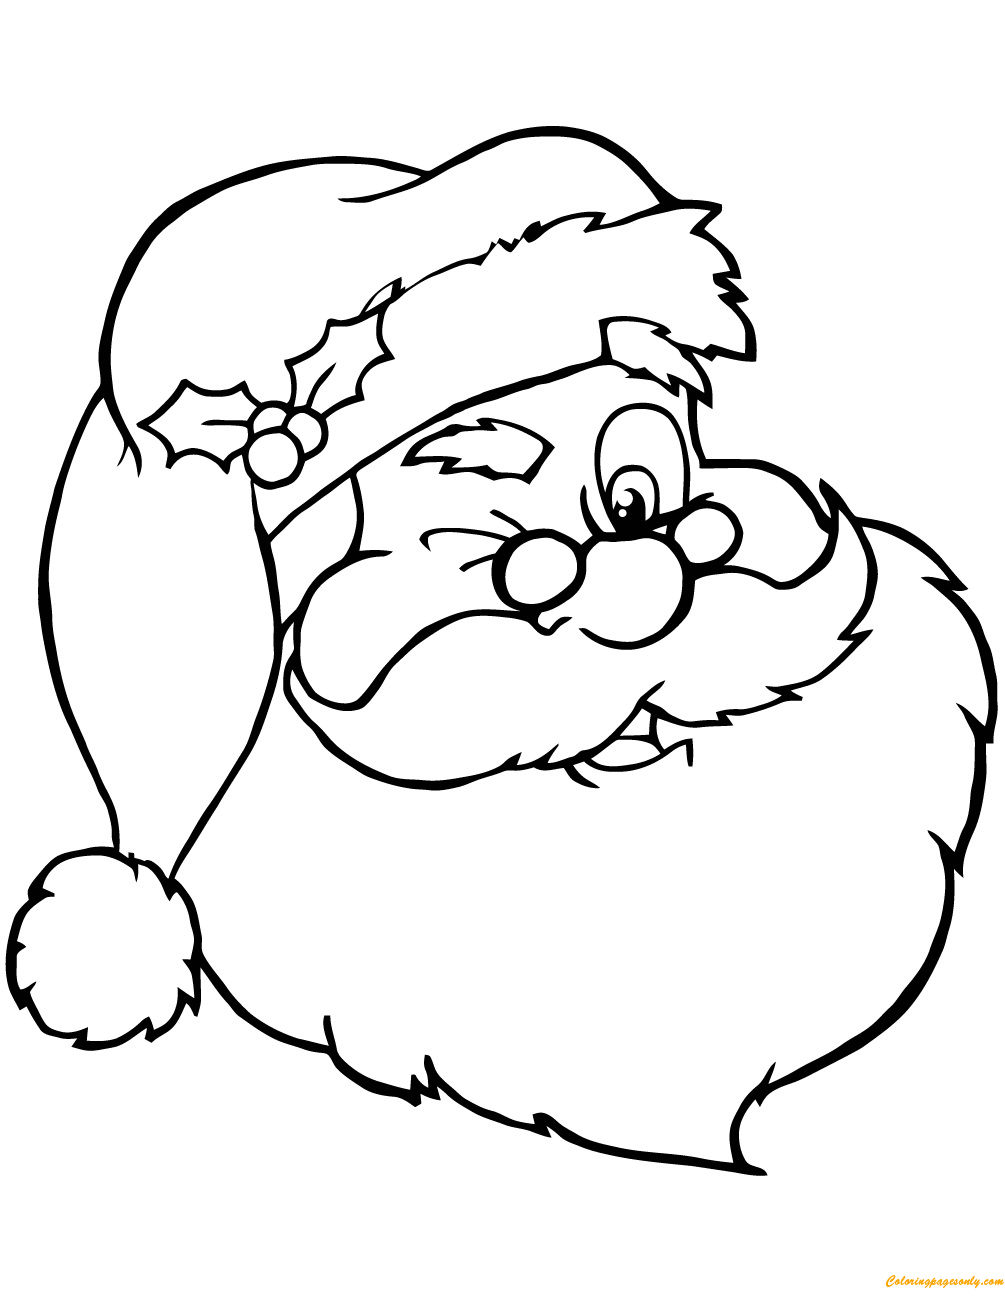 Winking Santa Claus Coloring Page